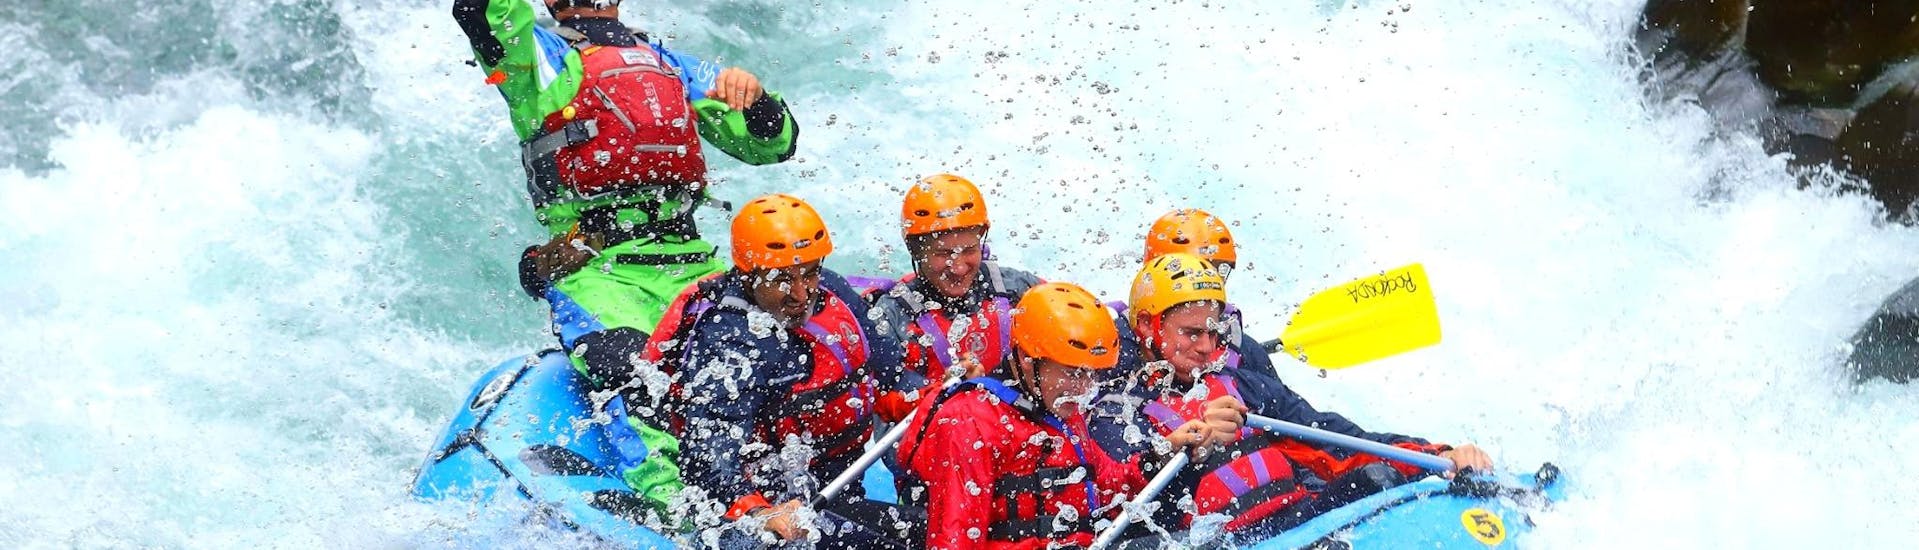 Een groep mensen op het vlot kijkt uit op het troebele water van de rivier de Lima tijdens de Rafting on the Lima - Spannend georganiseerd door Rockonda.